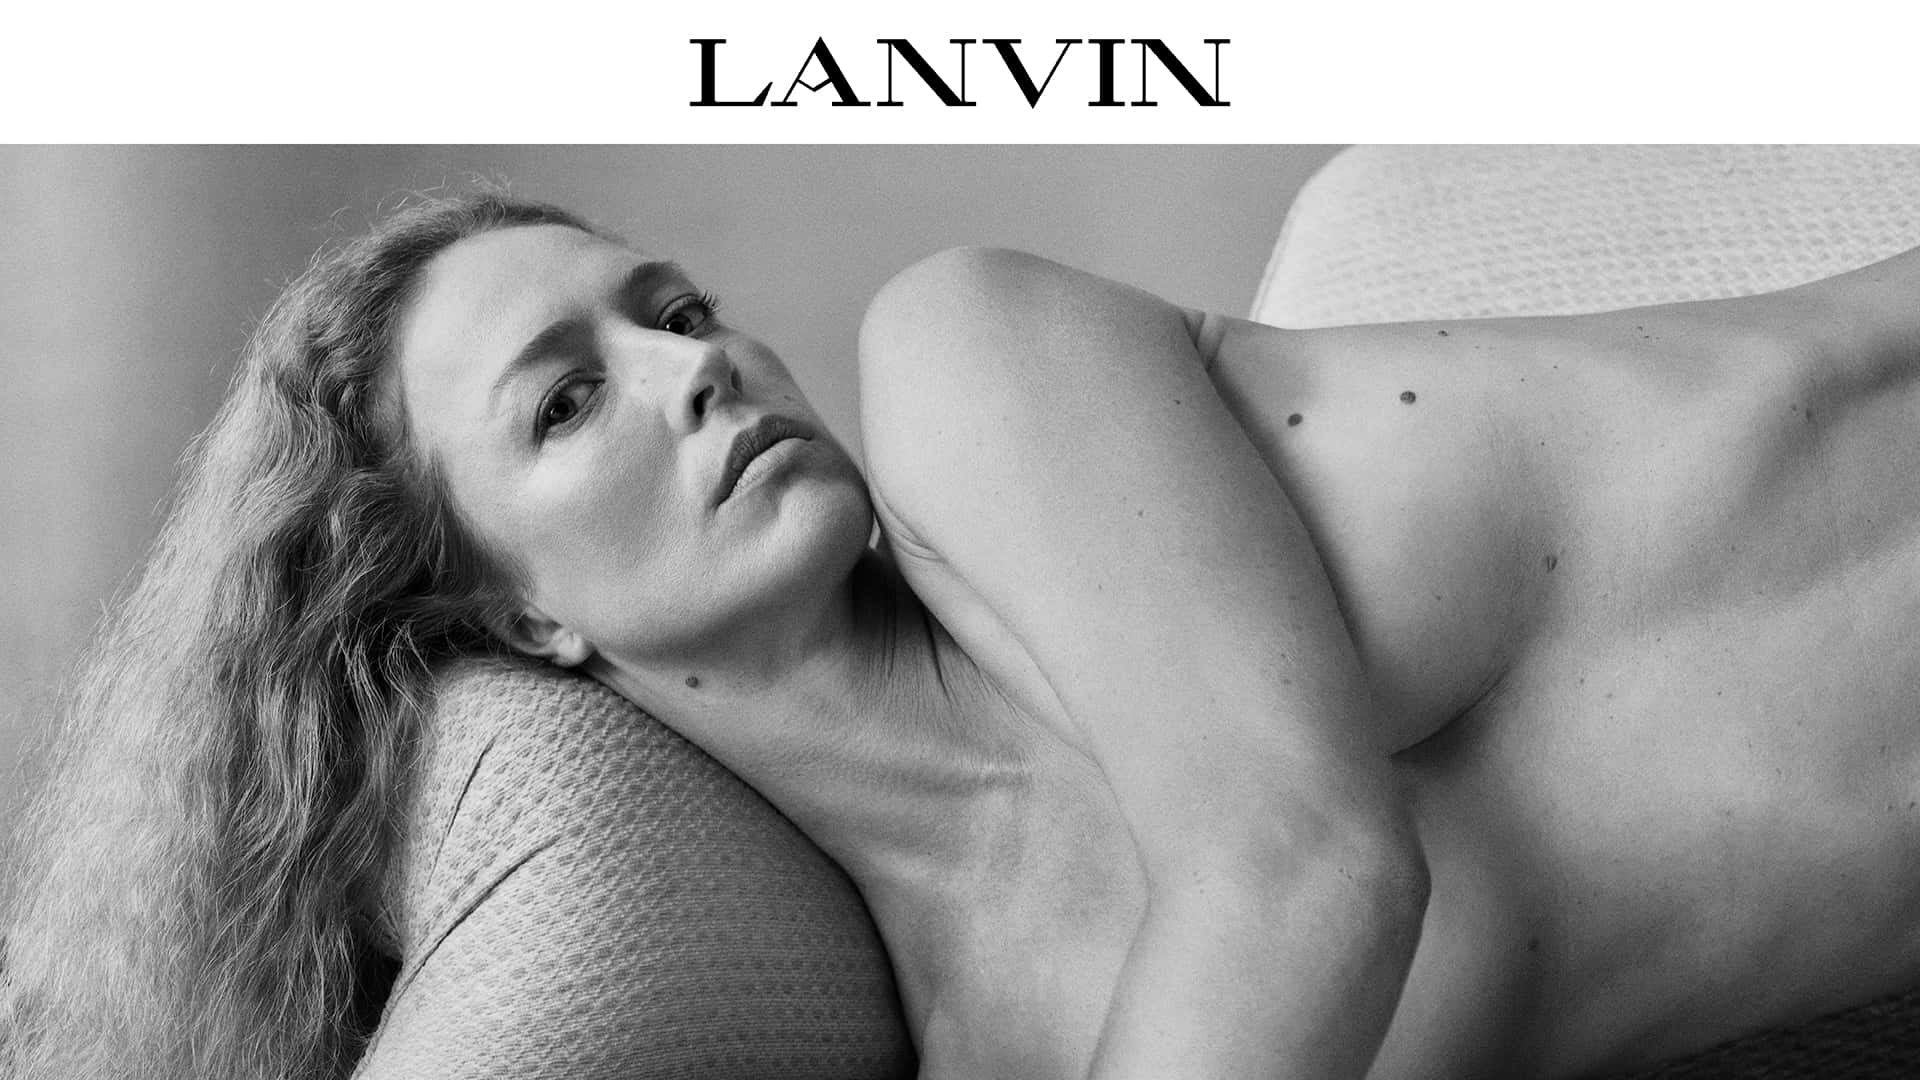 Lanvin Naked Model Wallpaper